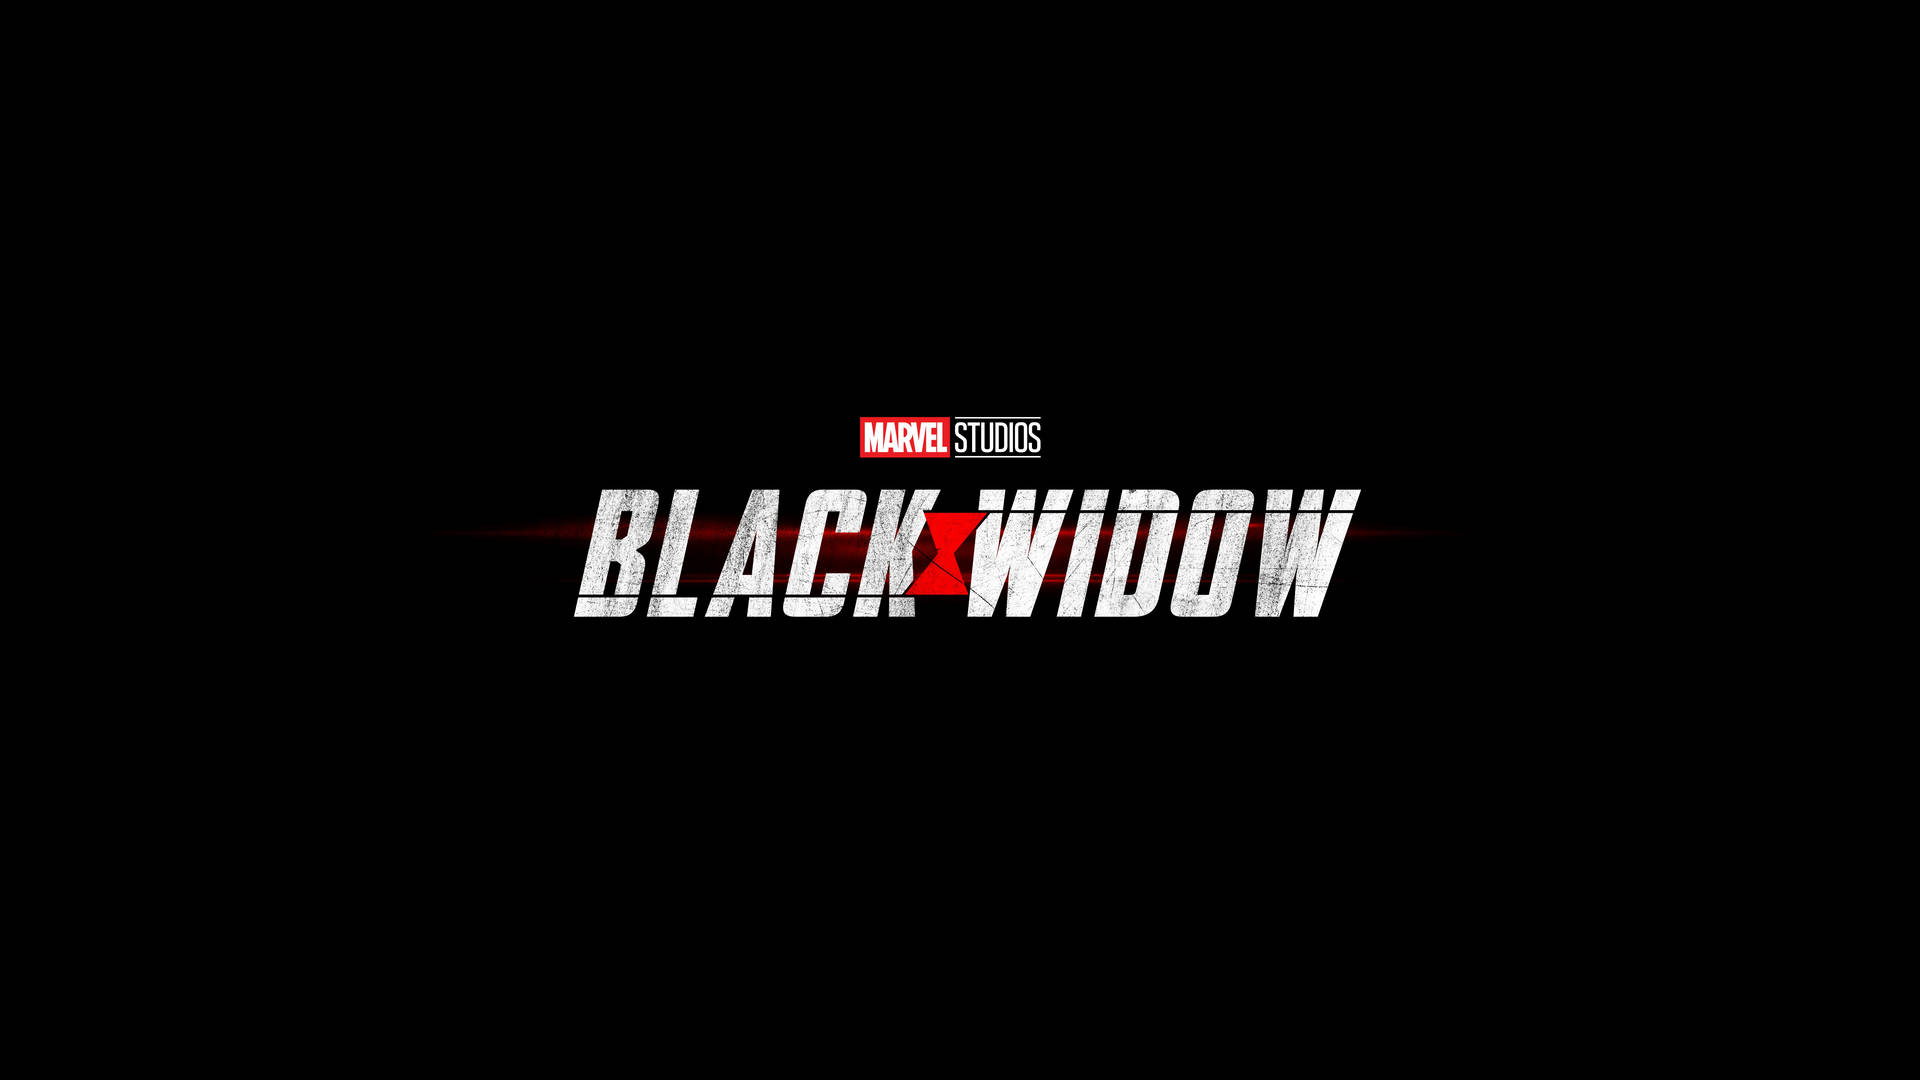 Black Widow Film Logo Background